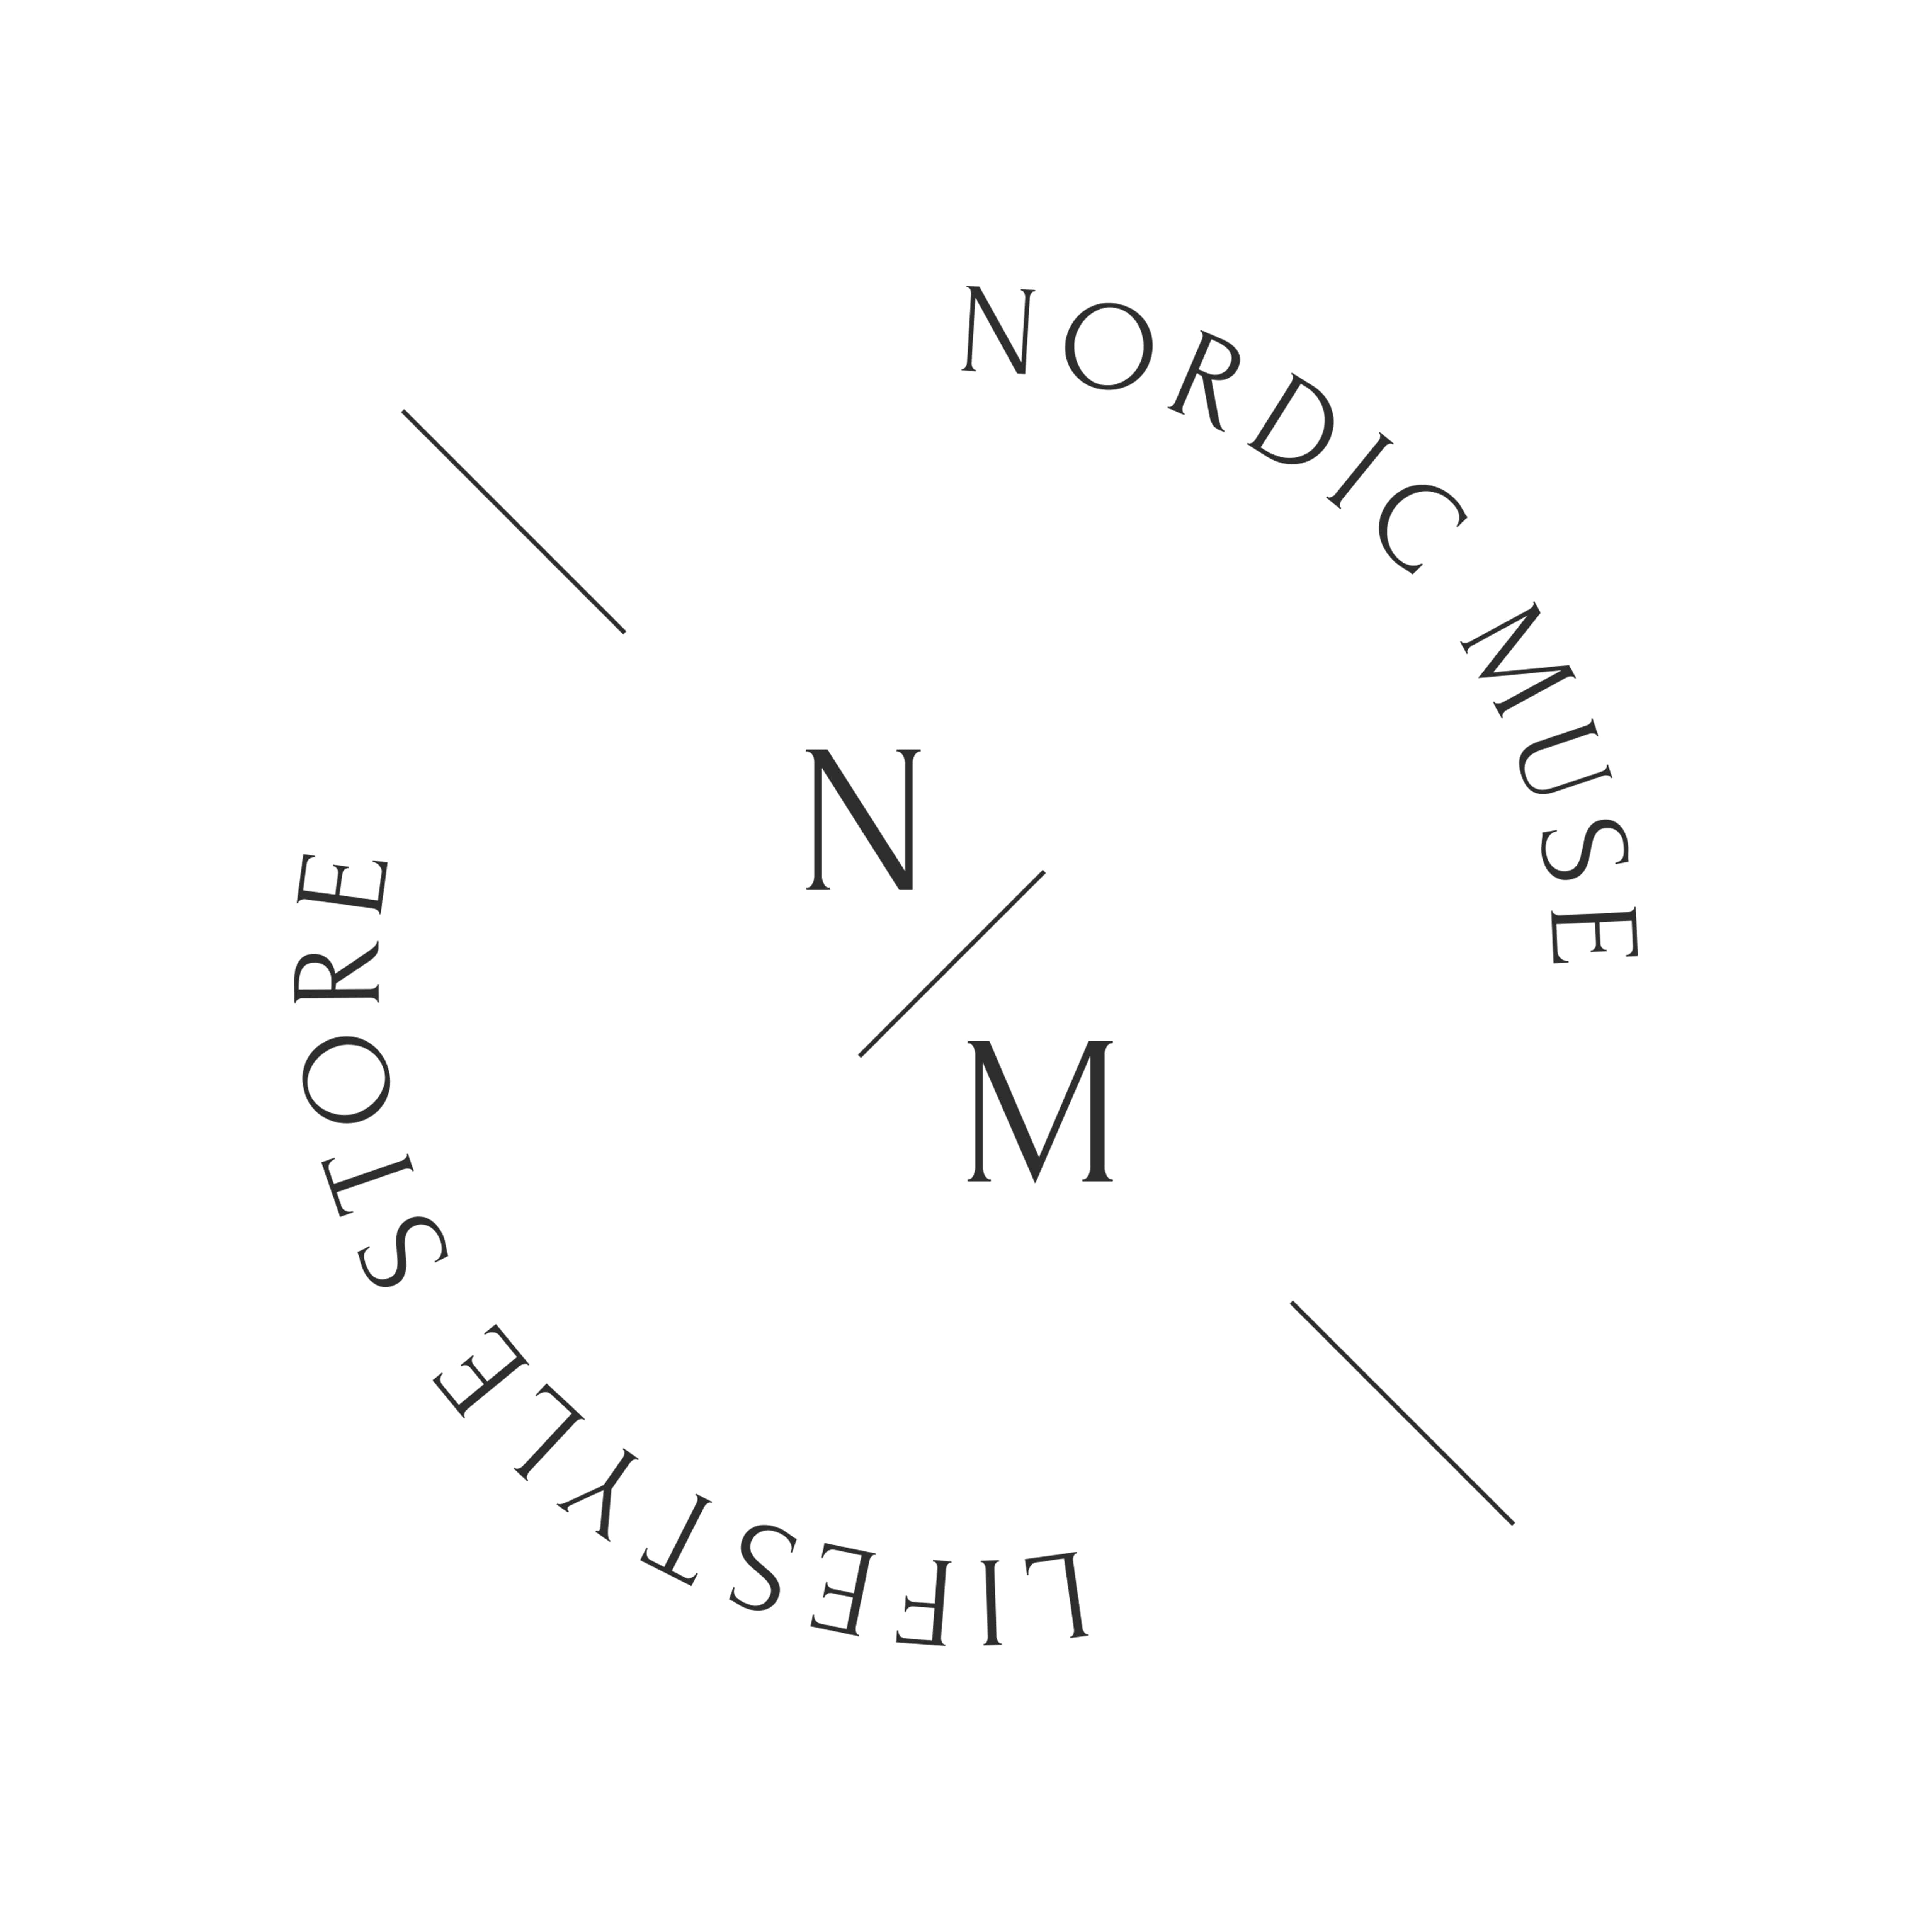 Nordicmuse